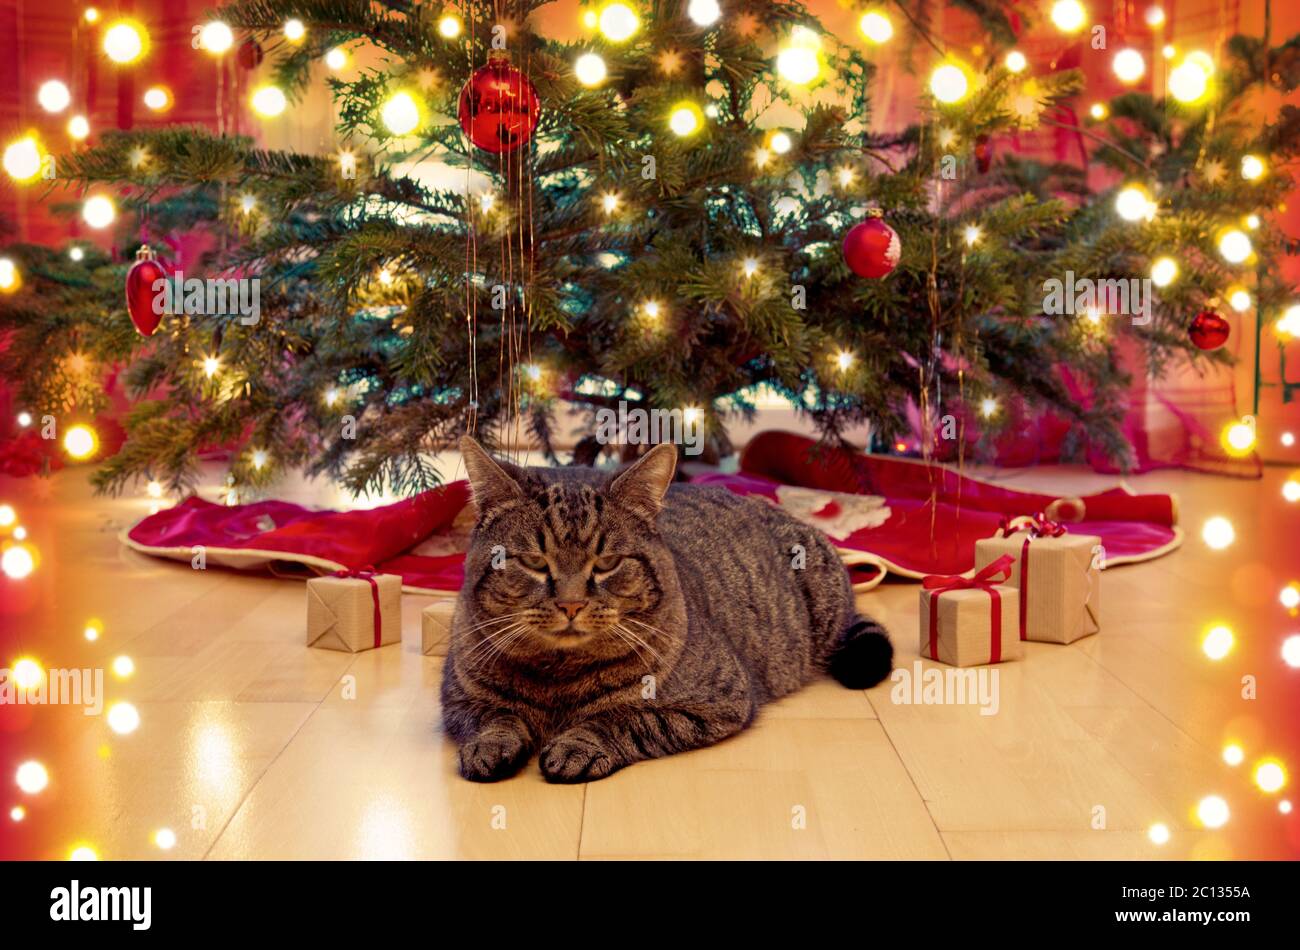 Weihnachtsbaum Parkett Stockfotos und -bilder Kaufen - Alamy